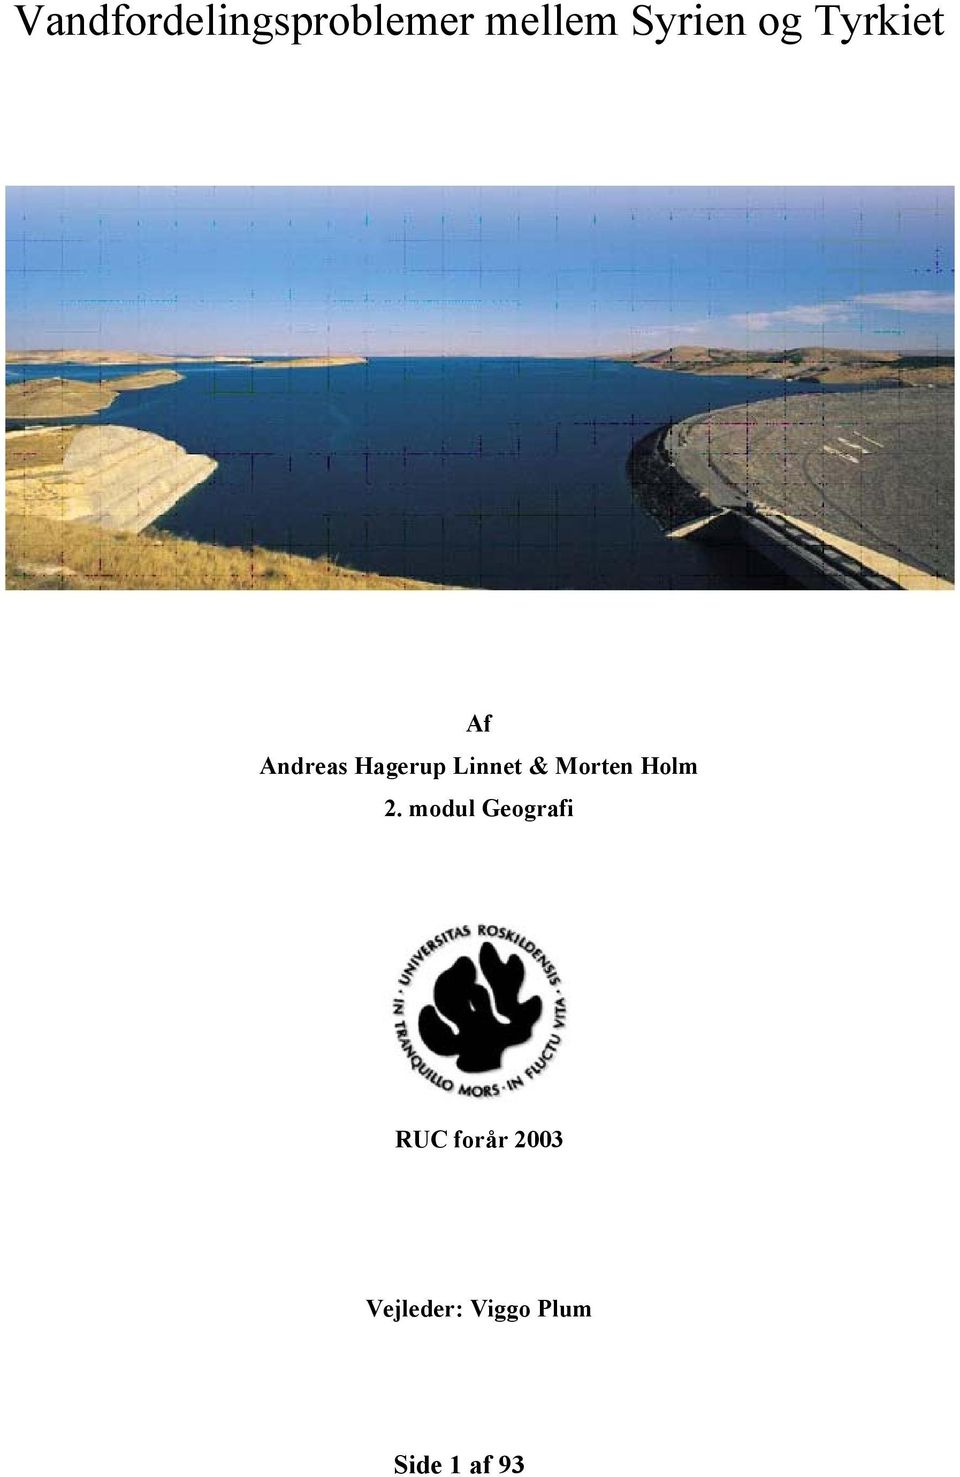 Vandfordelingsproblemer mellem Syrien og Tyrkiet - PDF Free Download